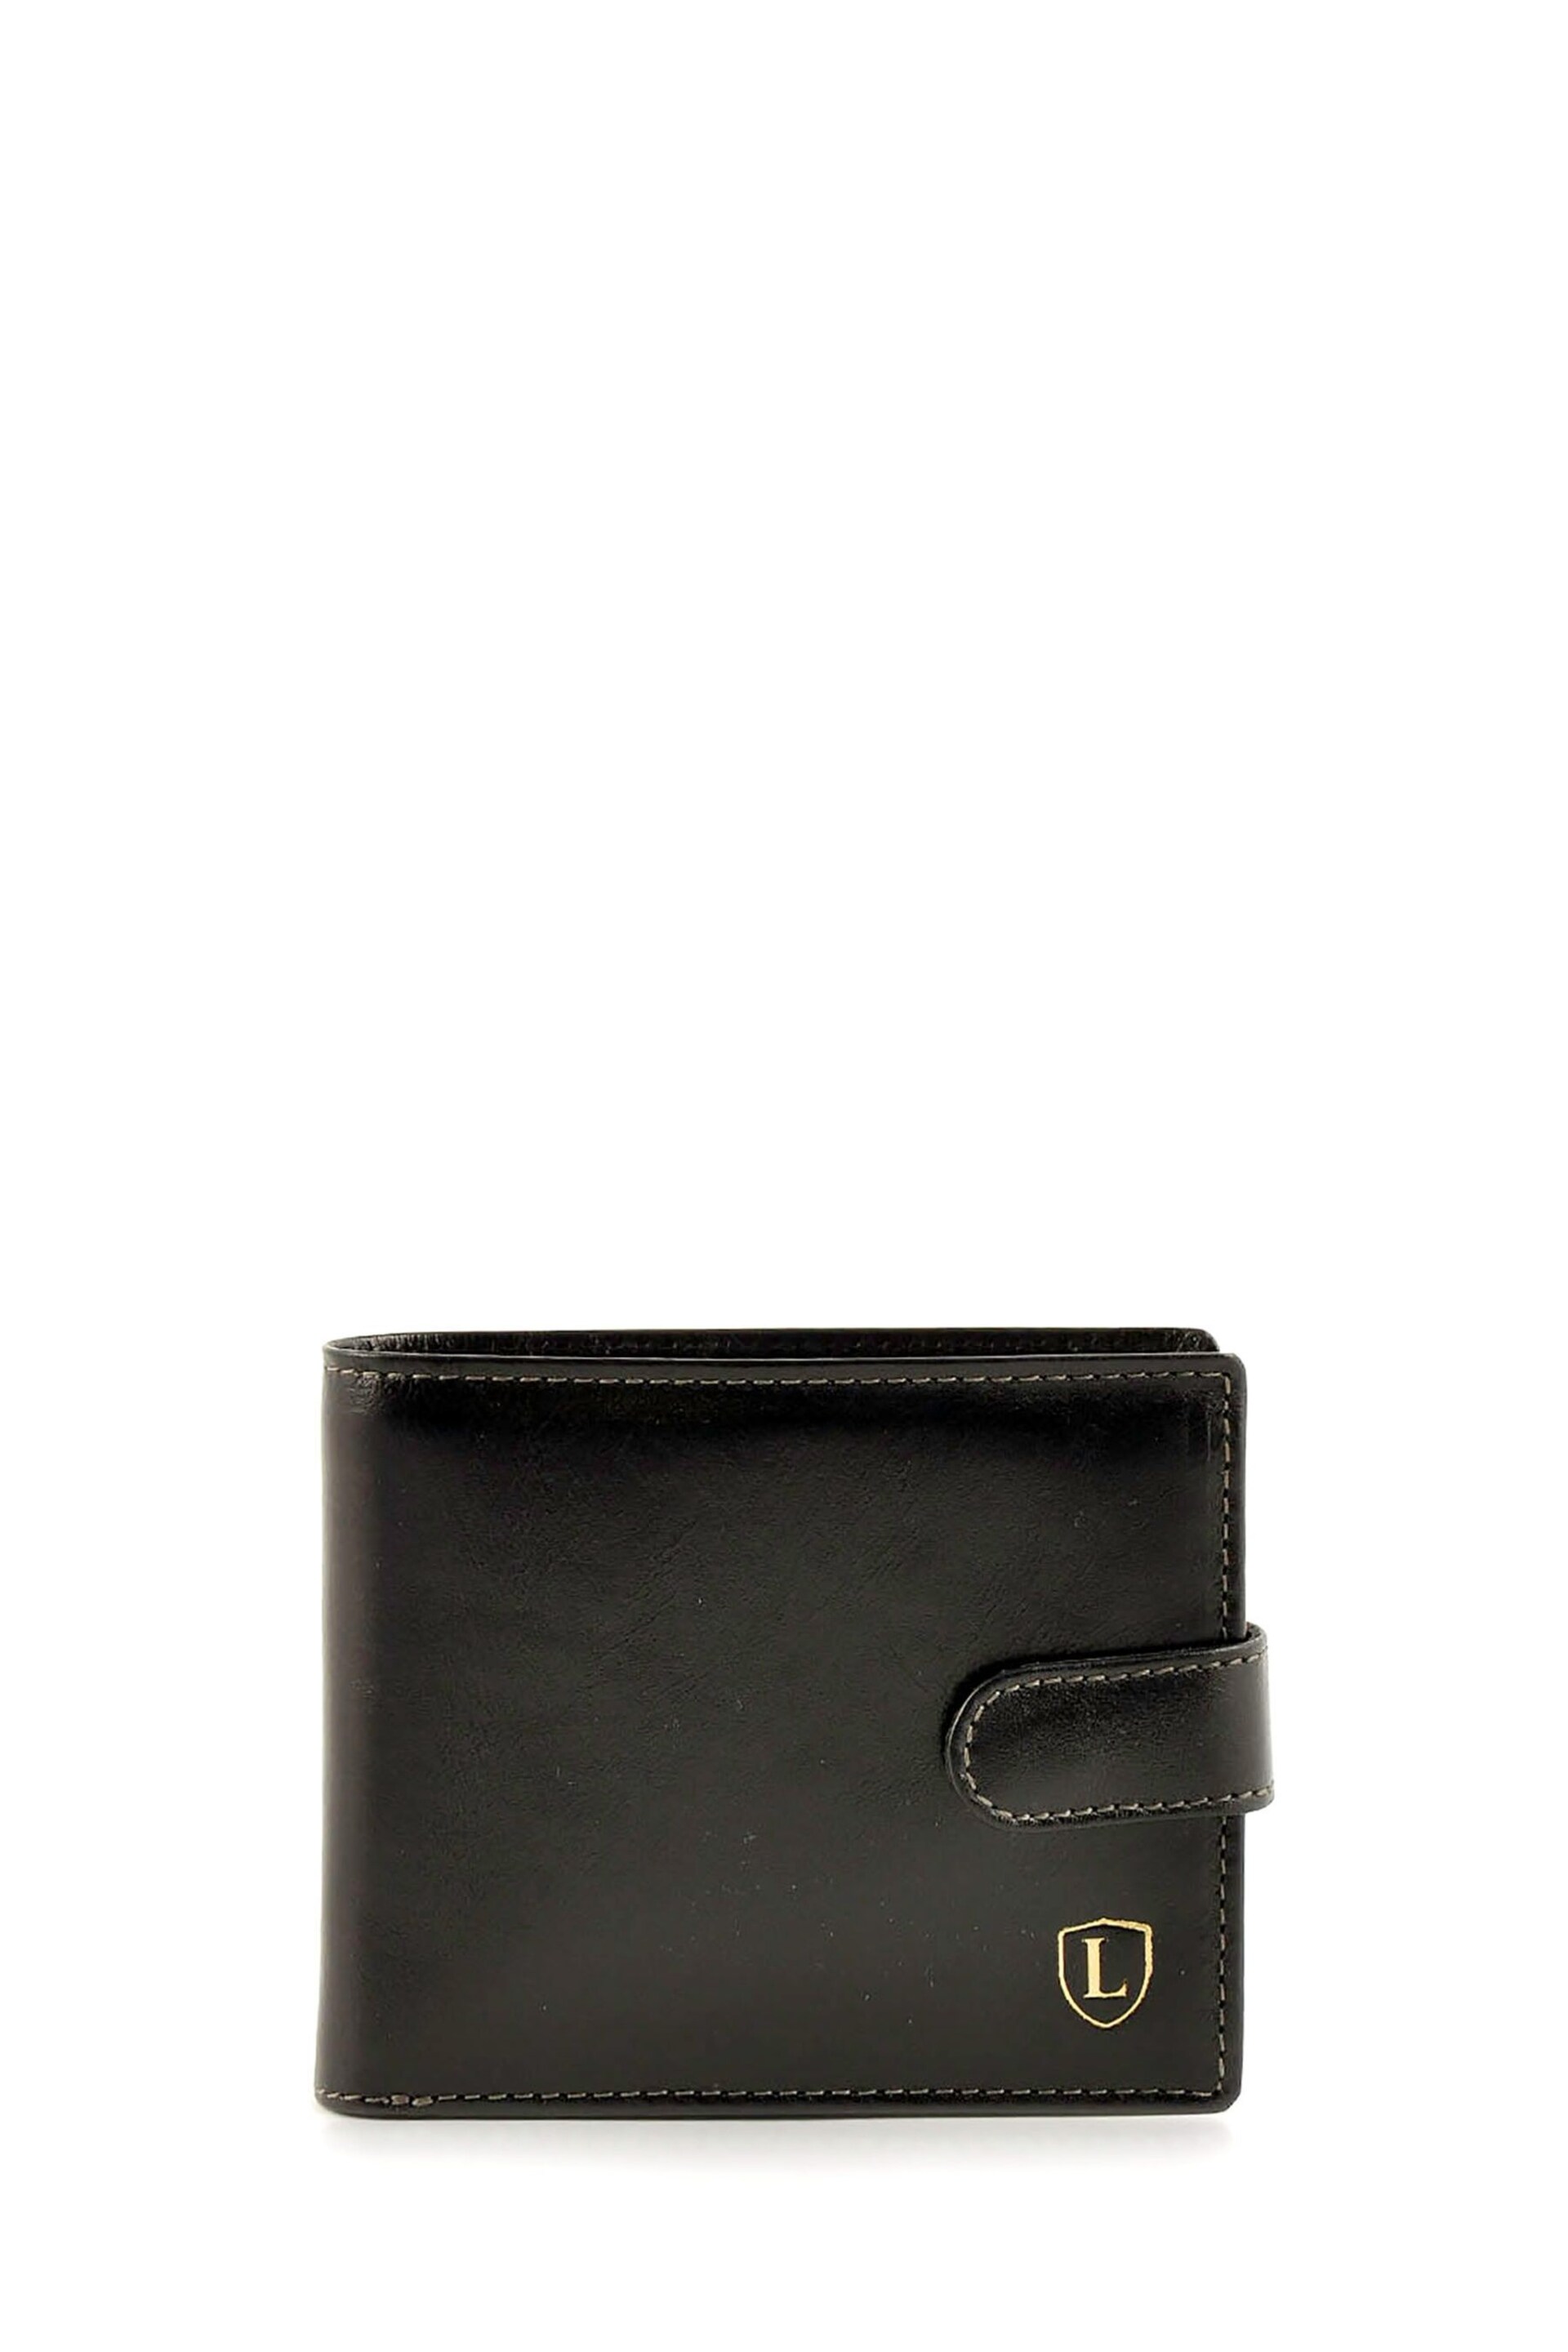 Lakeland Leather Ascari Leather Tri-Fold Wallet - Image 1 of 5